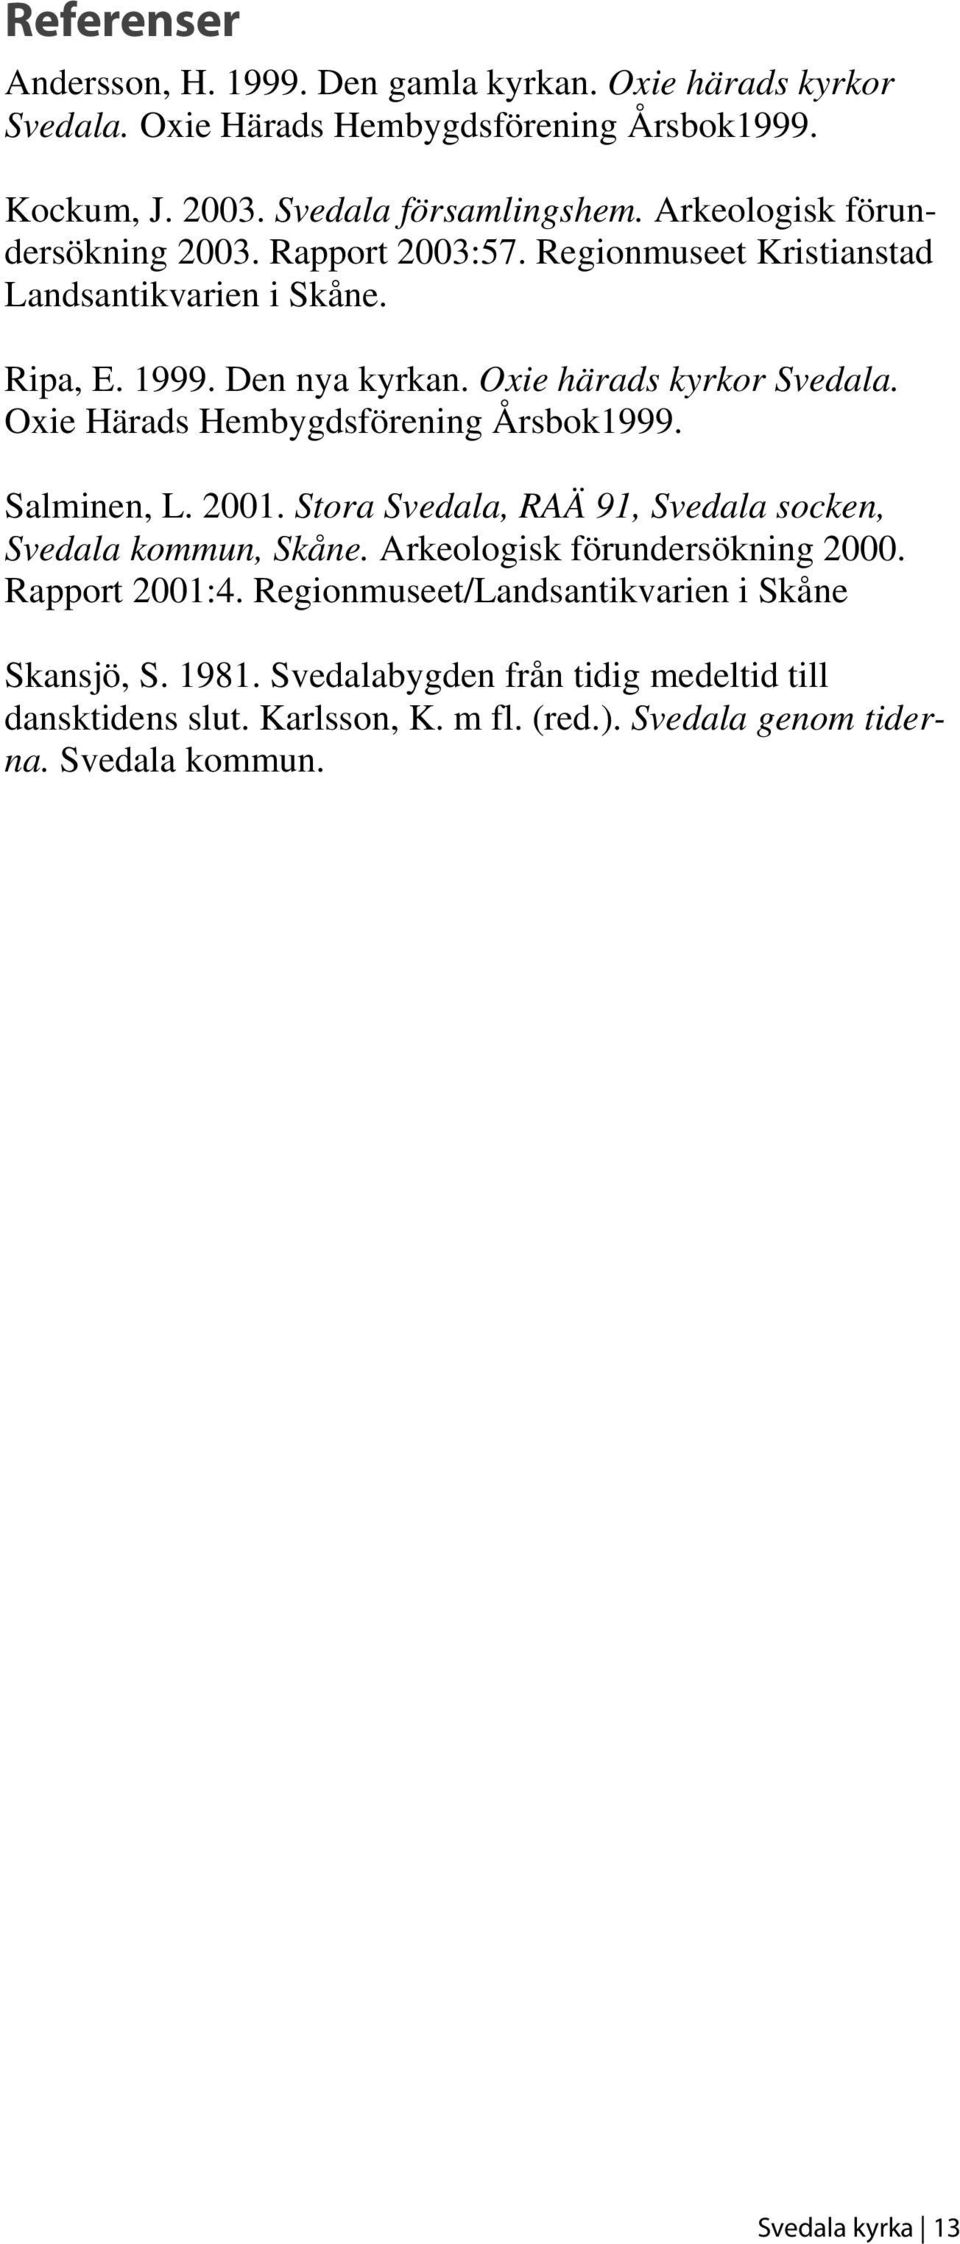 Oxie Härads Hembygdsförening Årsbok1999. Salminen, L. 2001. Stora Svedala, RAÄ 91, Svedala socken, Svedala kommun, Skåne. Arkeologisk förundersökning 2000. Rapport 2001:4.